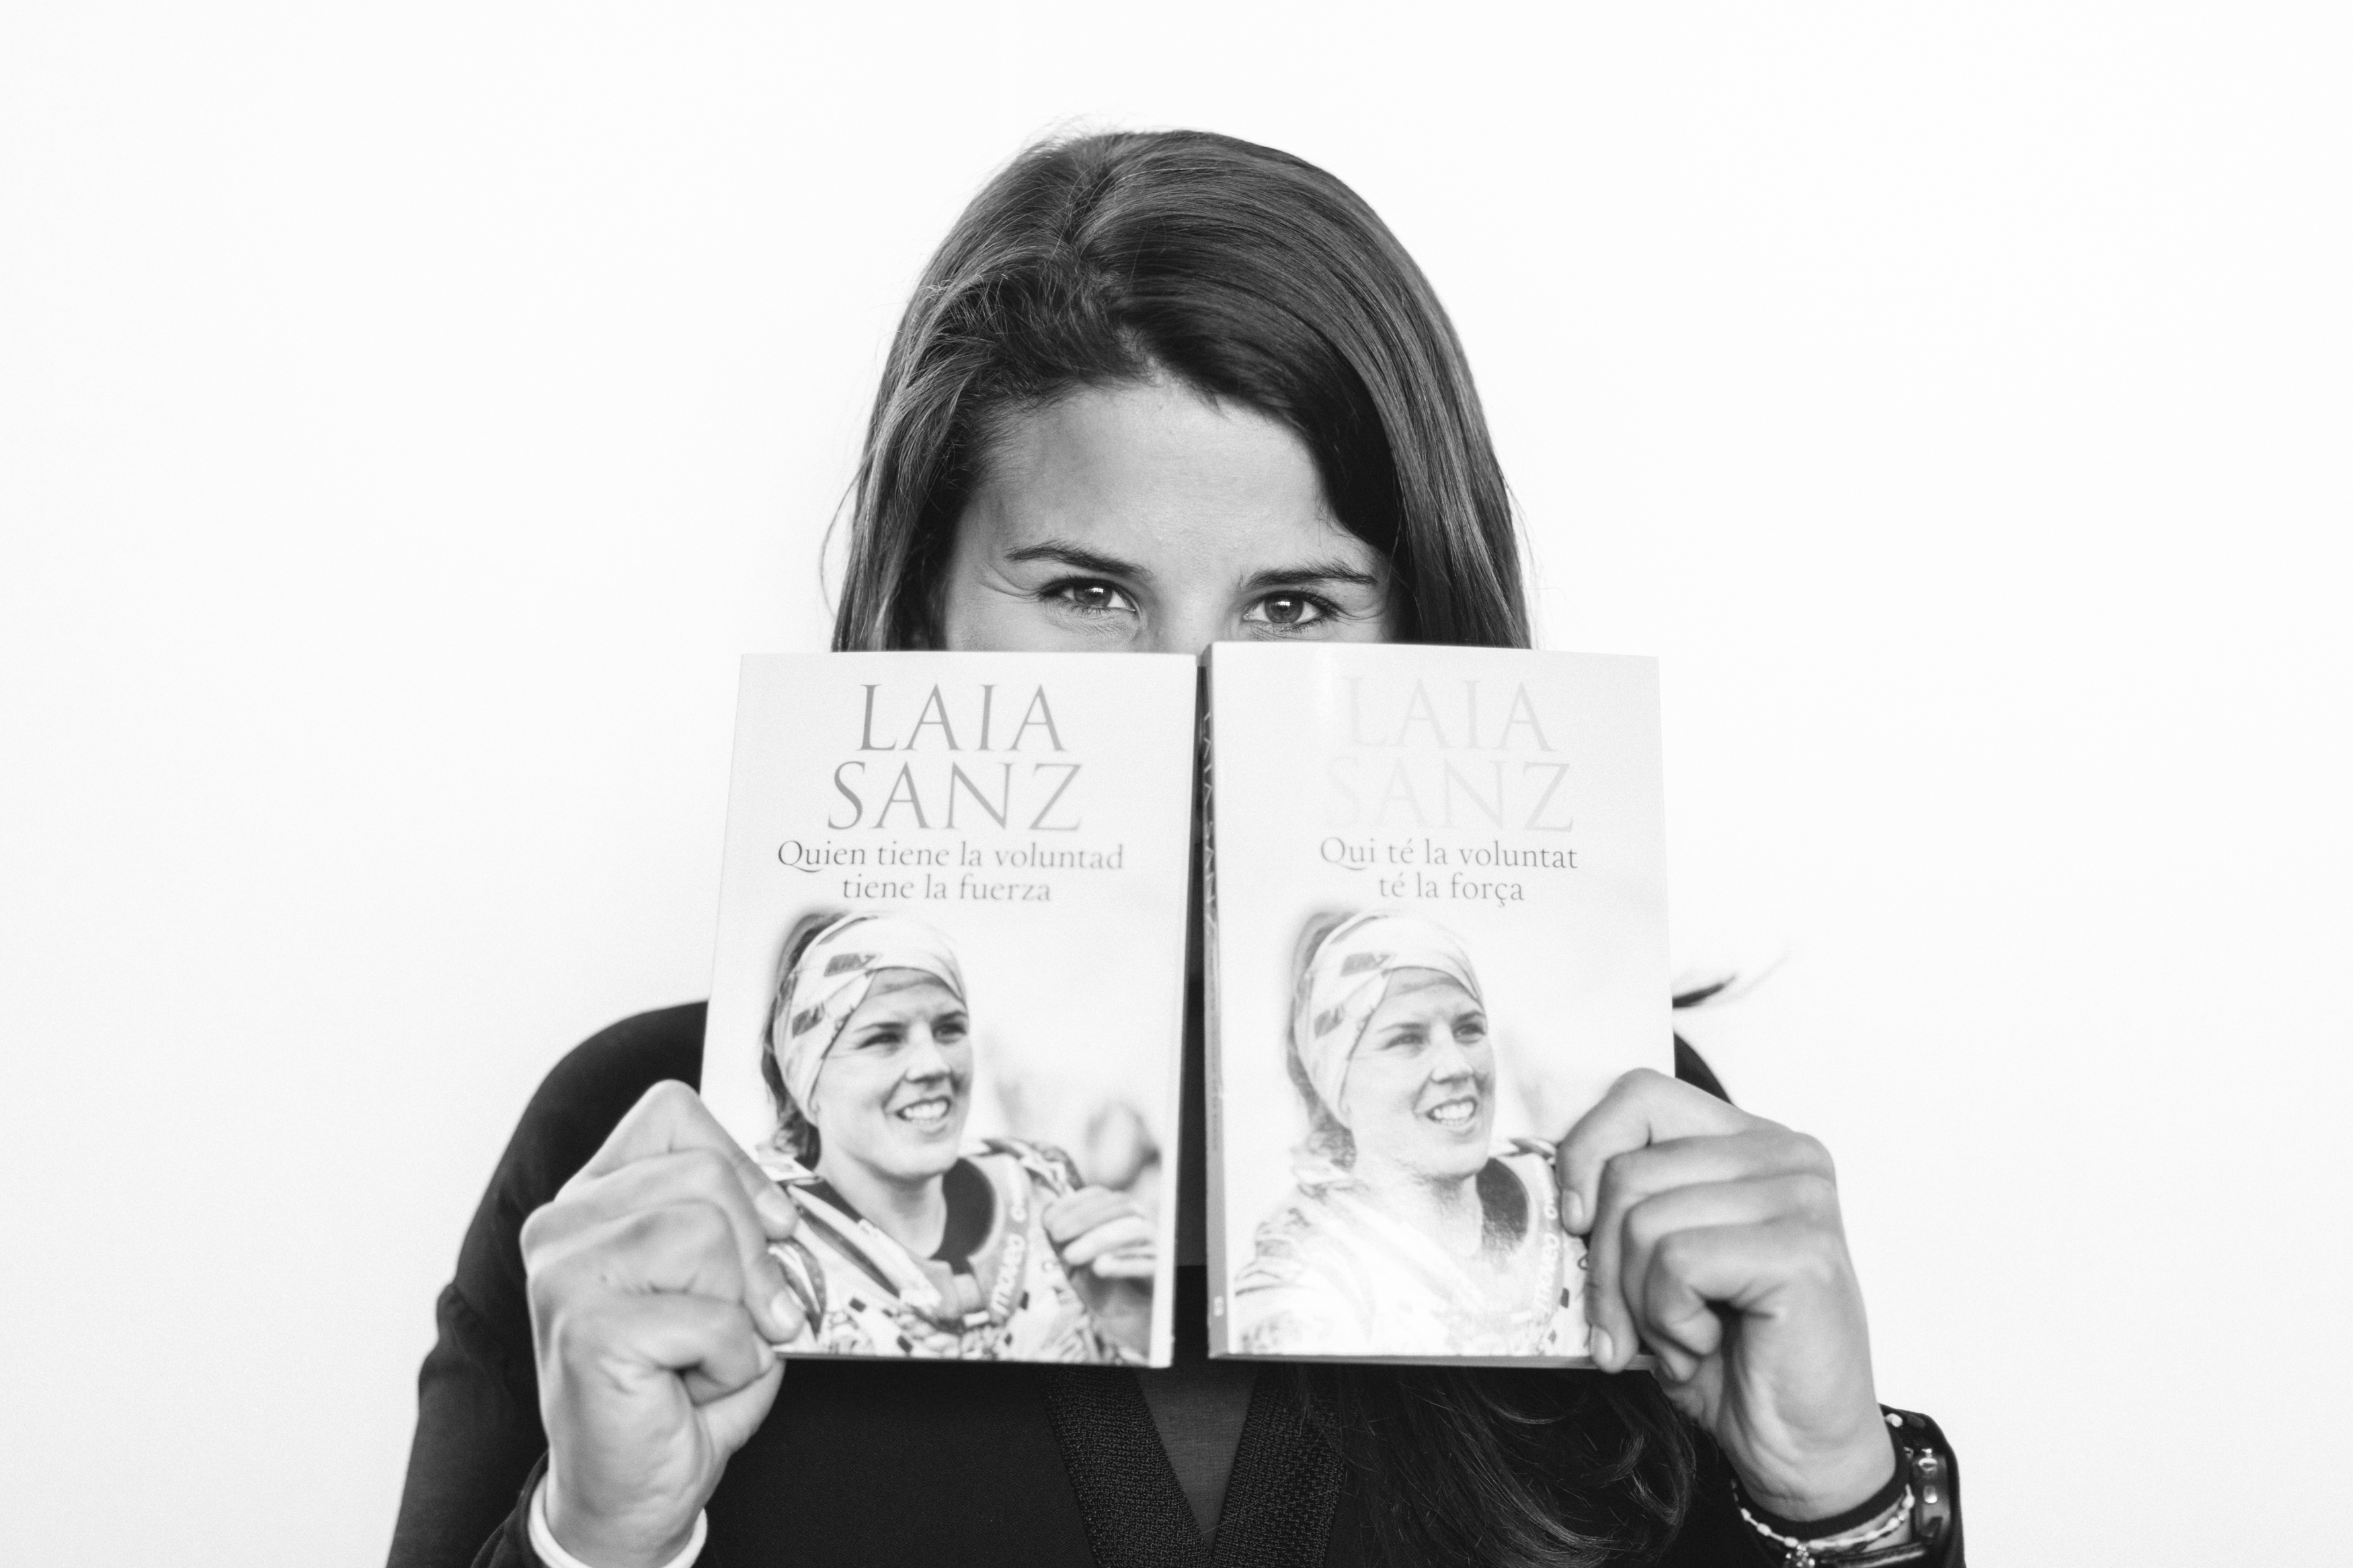 Лайа Санц е най-известната жена участник на рали Дакар. На